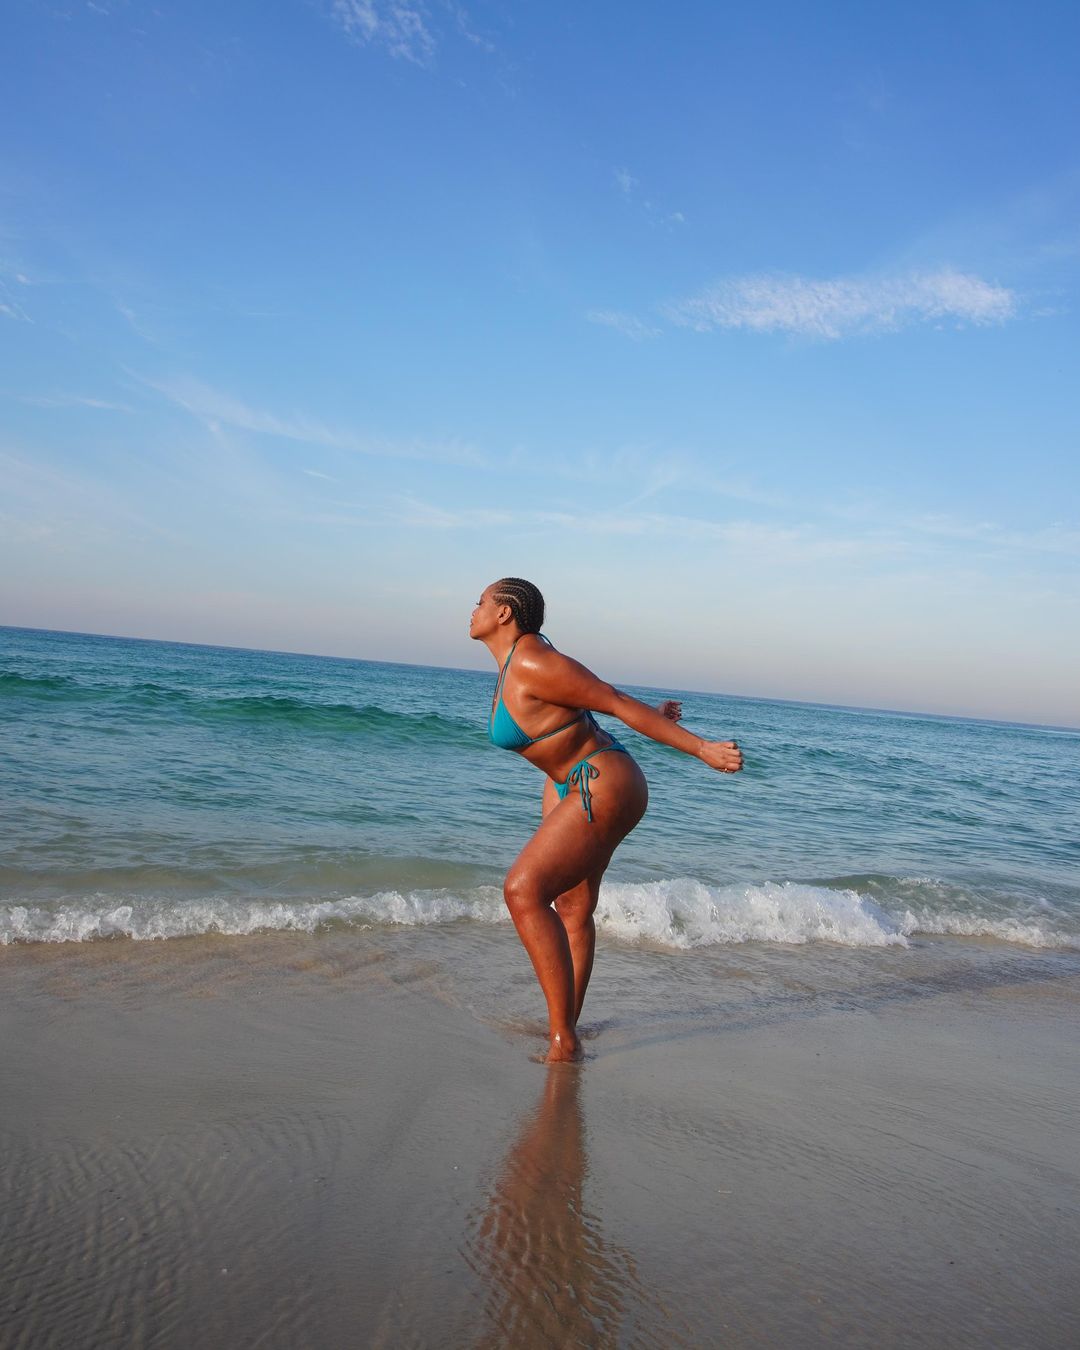 Gaby Amarantos posa de biquini em praia Reprodução/Instagram